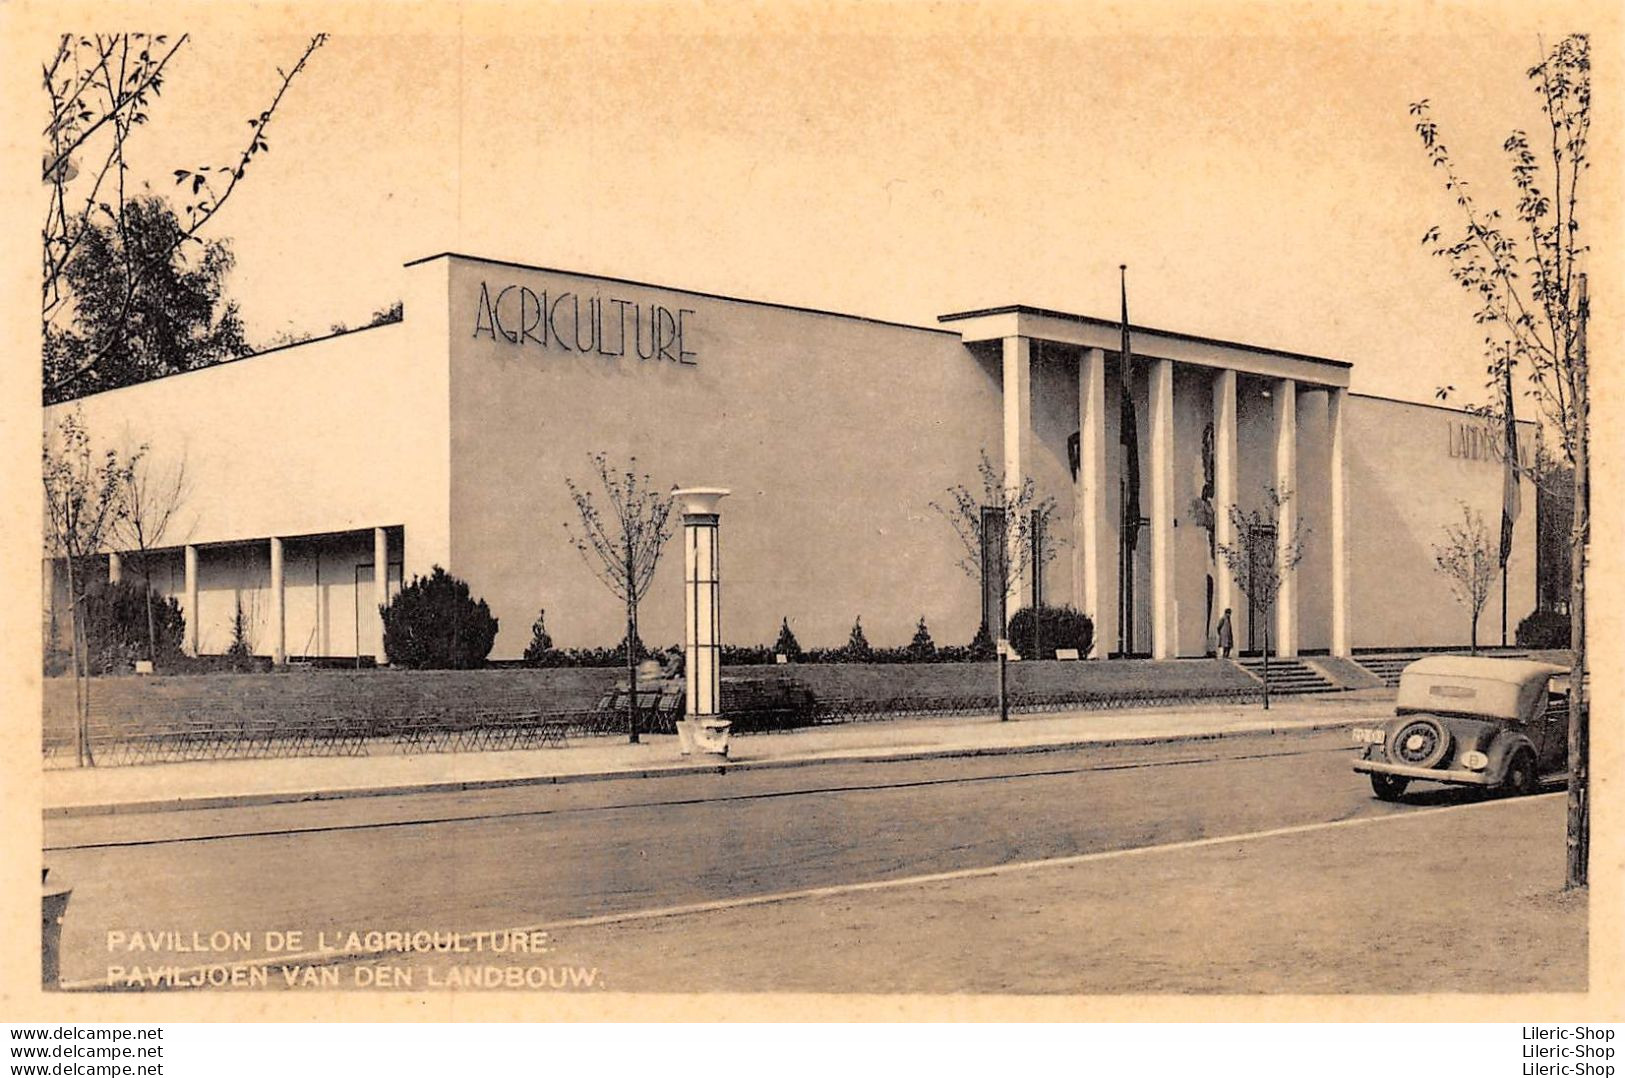 Exposition Universelle 1935 - PAVILLON DE L'AGRICULTURE / PAVILJOEN VAN DEN LANDBOUW Automobile - Expositions Universelles